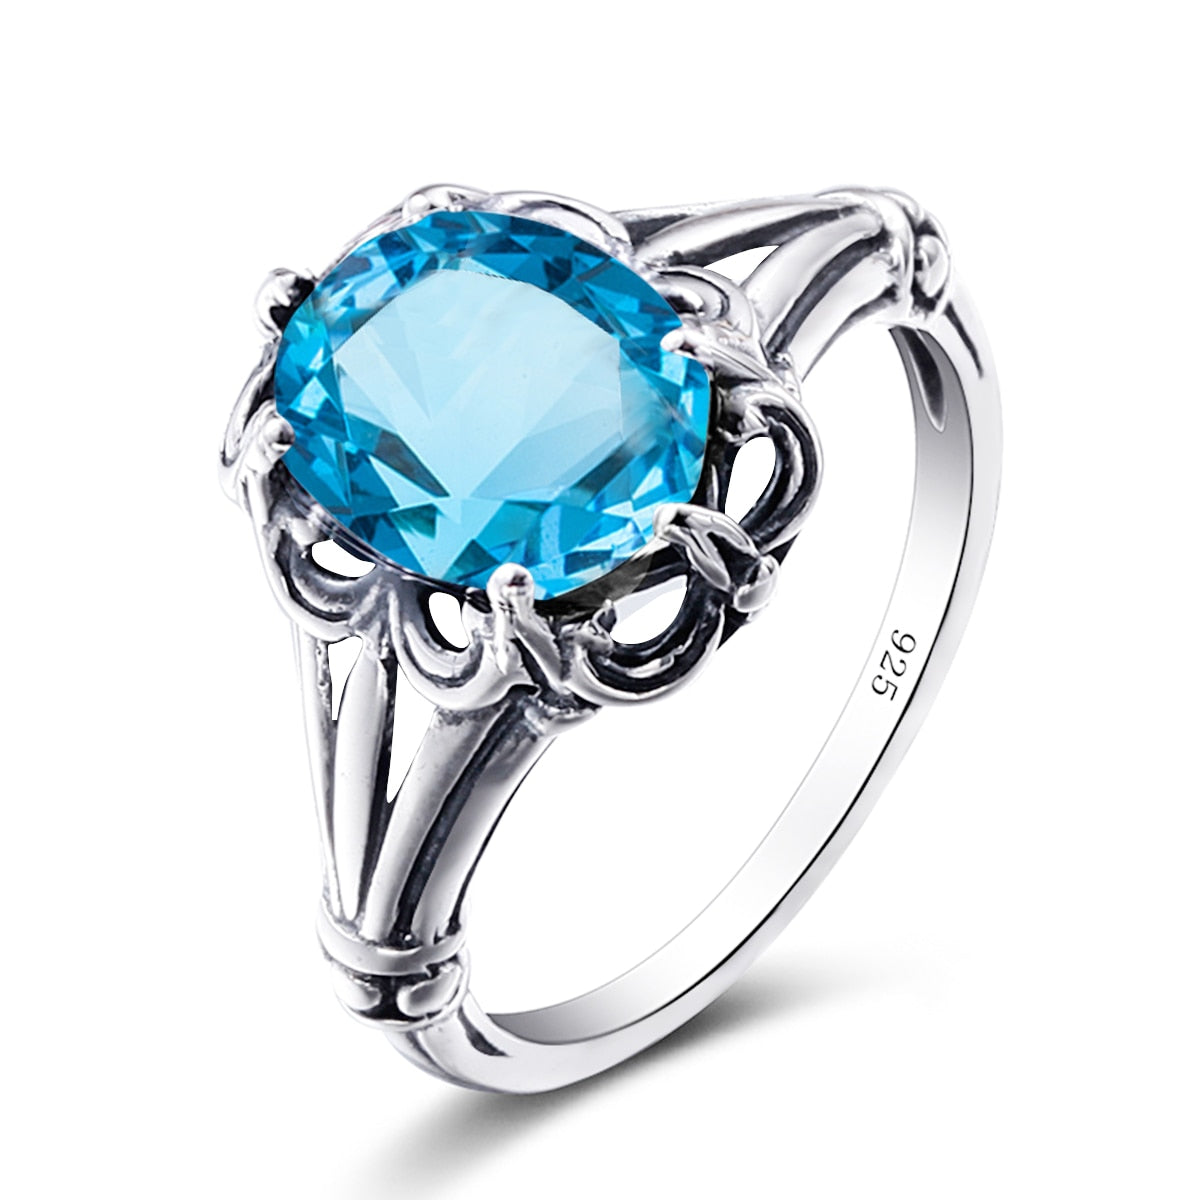 100% 925 Sterling Silver Rings Oval Design Garnet Bohemian Handmade Victoria Wieck Rings For Women Fine Jewelry Blue Topaz